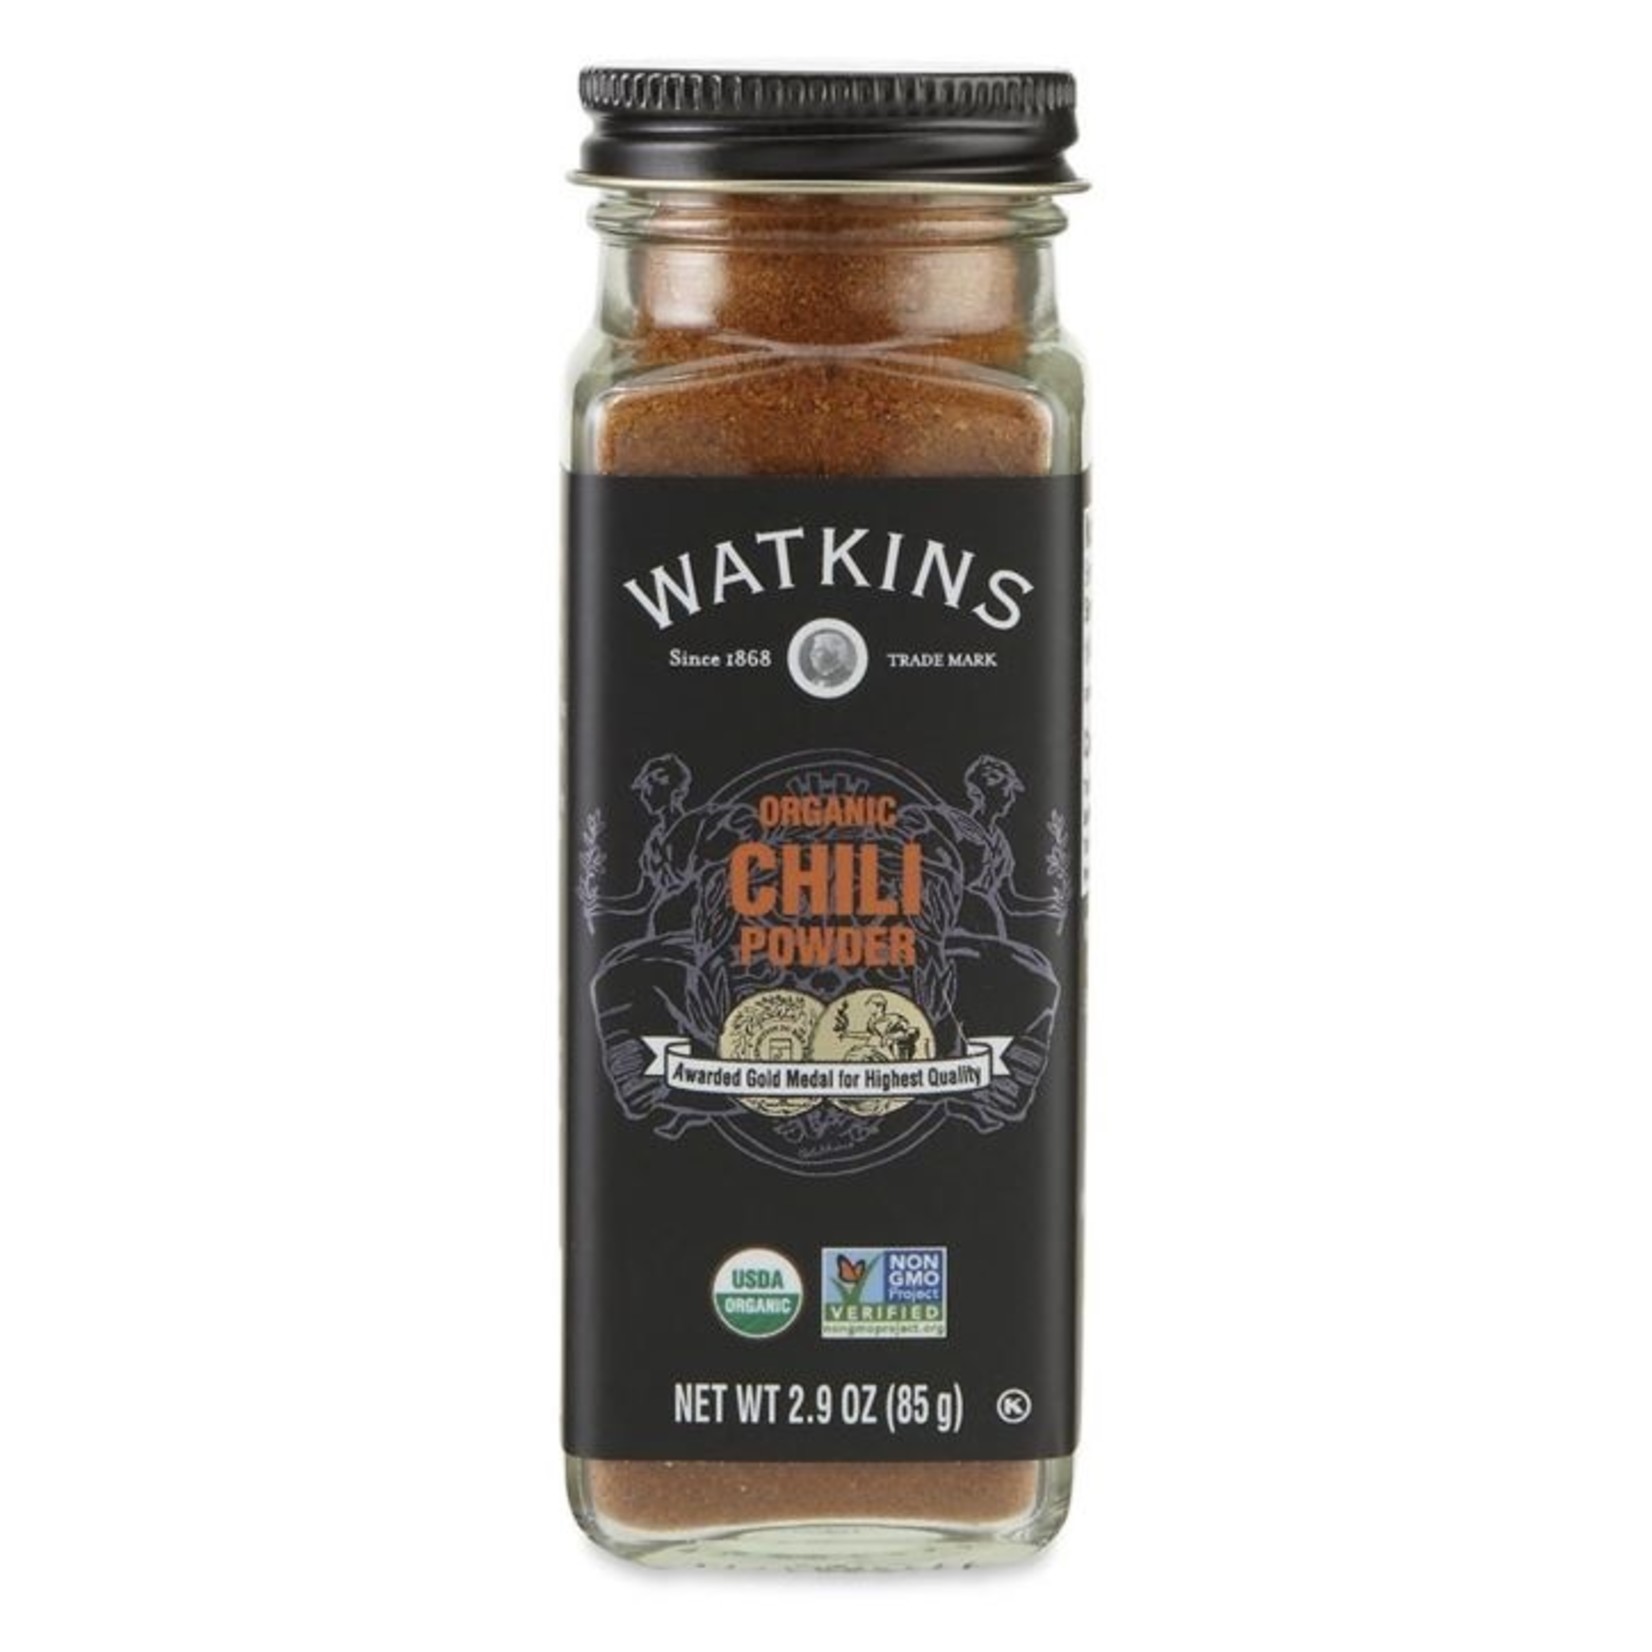 The Watkins Co. Watkins Organic Chili Powder